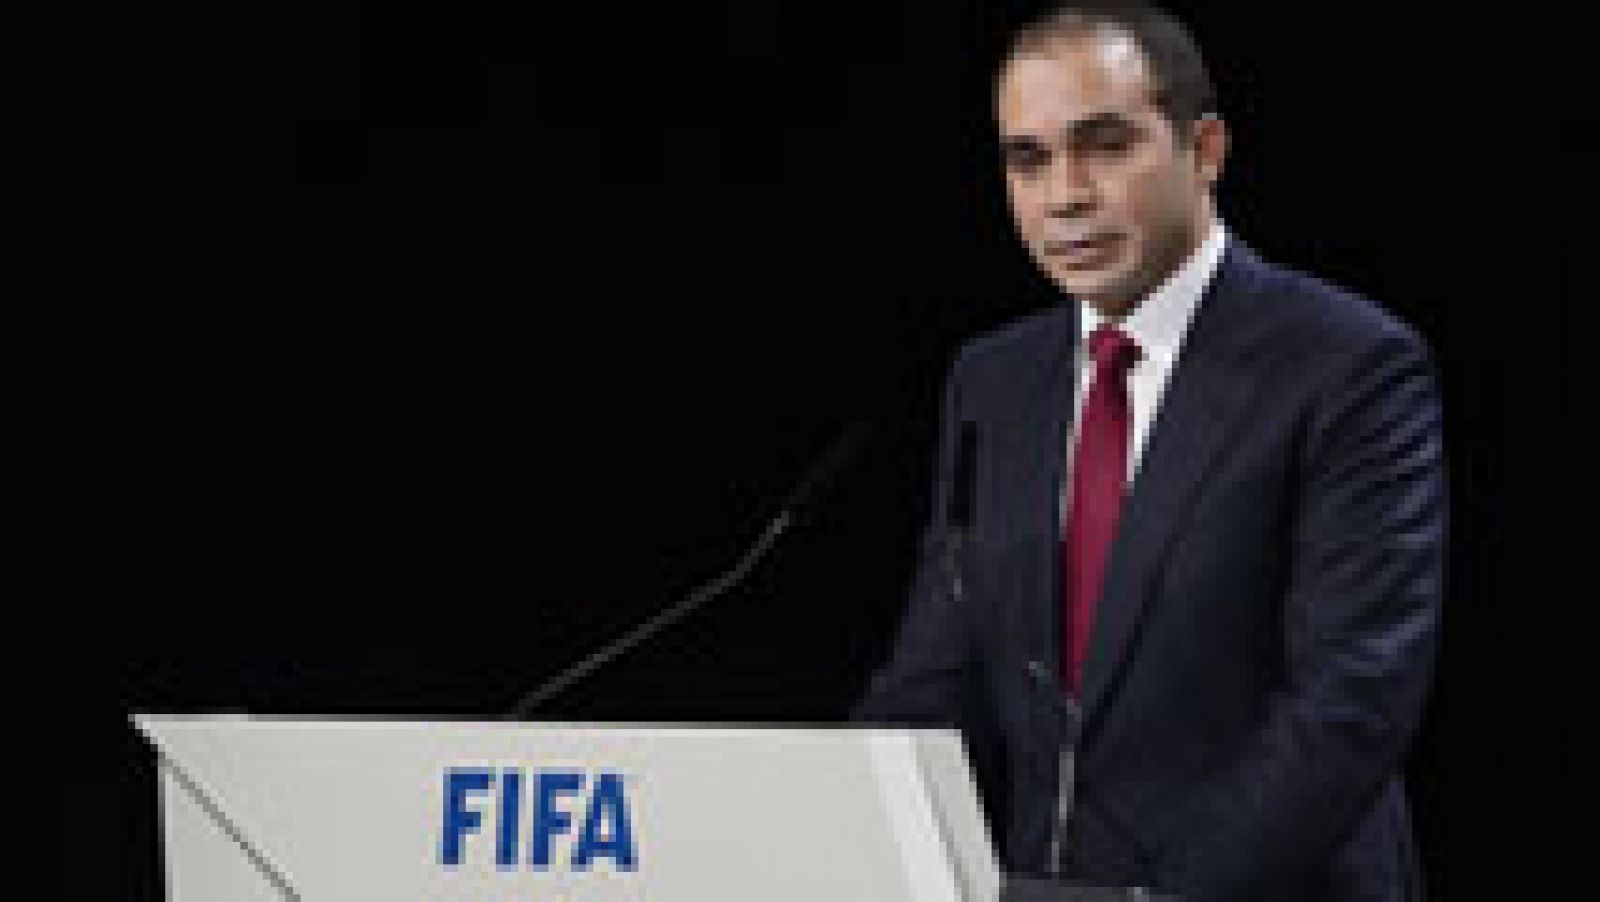 La dimisión de Blatter ha abierto la búsqueda de nuevo presidente de la FIFA. El más destacado es el príncipe jordano Ali Al-Hussein, único rival de Blatter en las elecciones del pasado viernes.